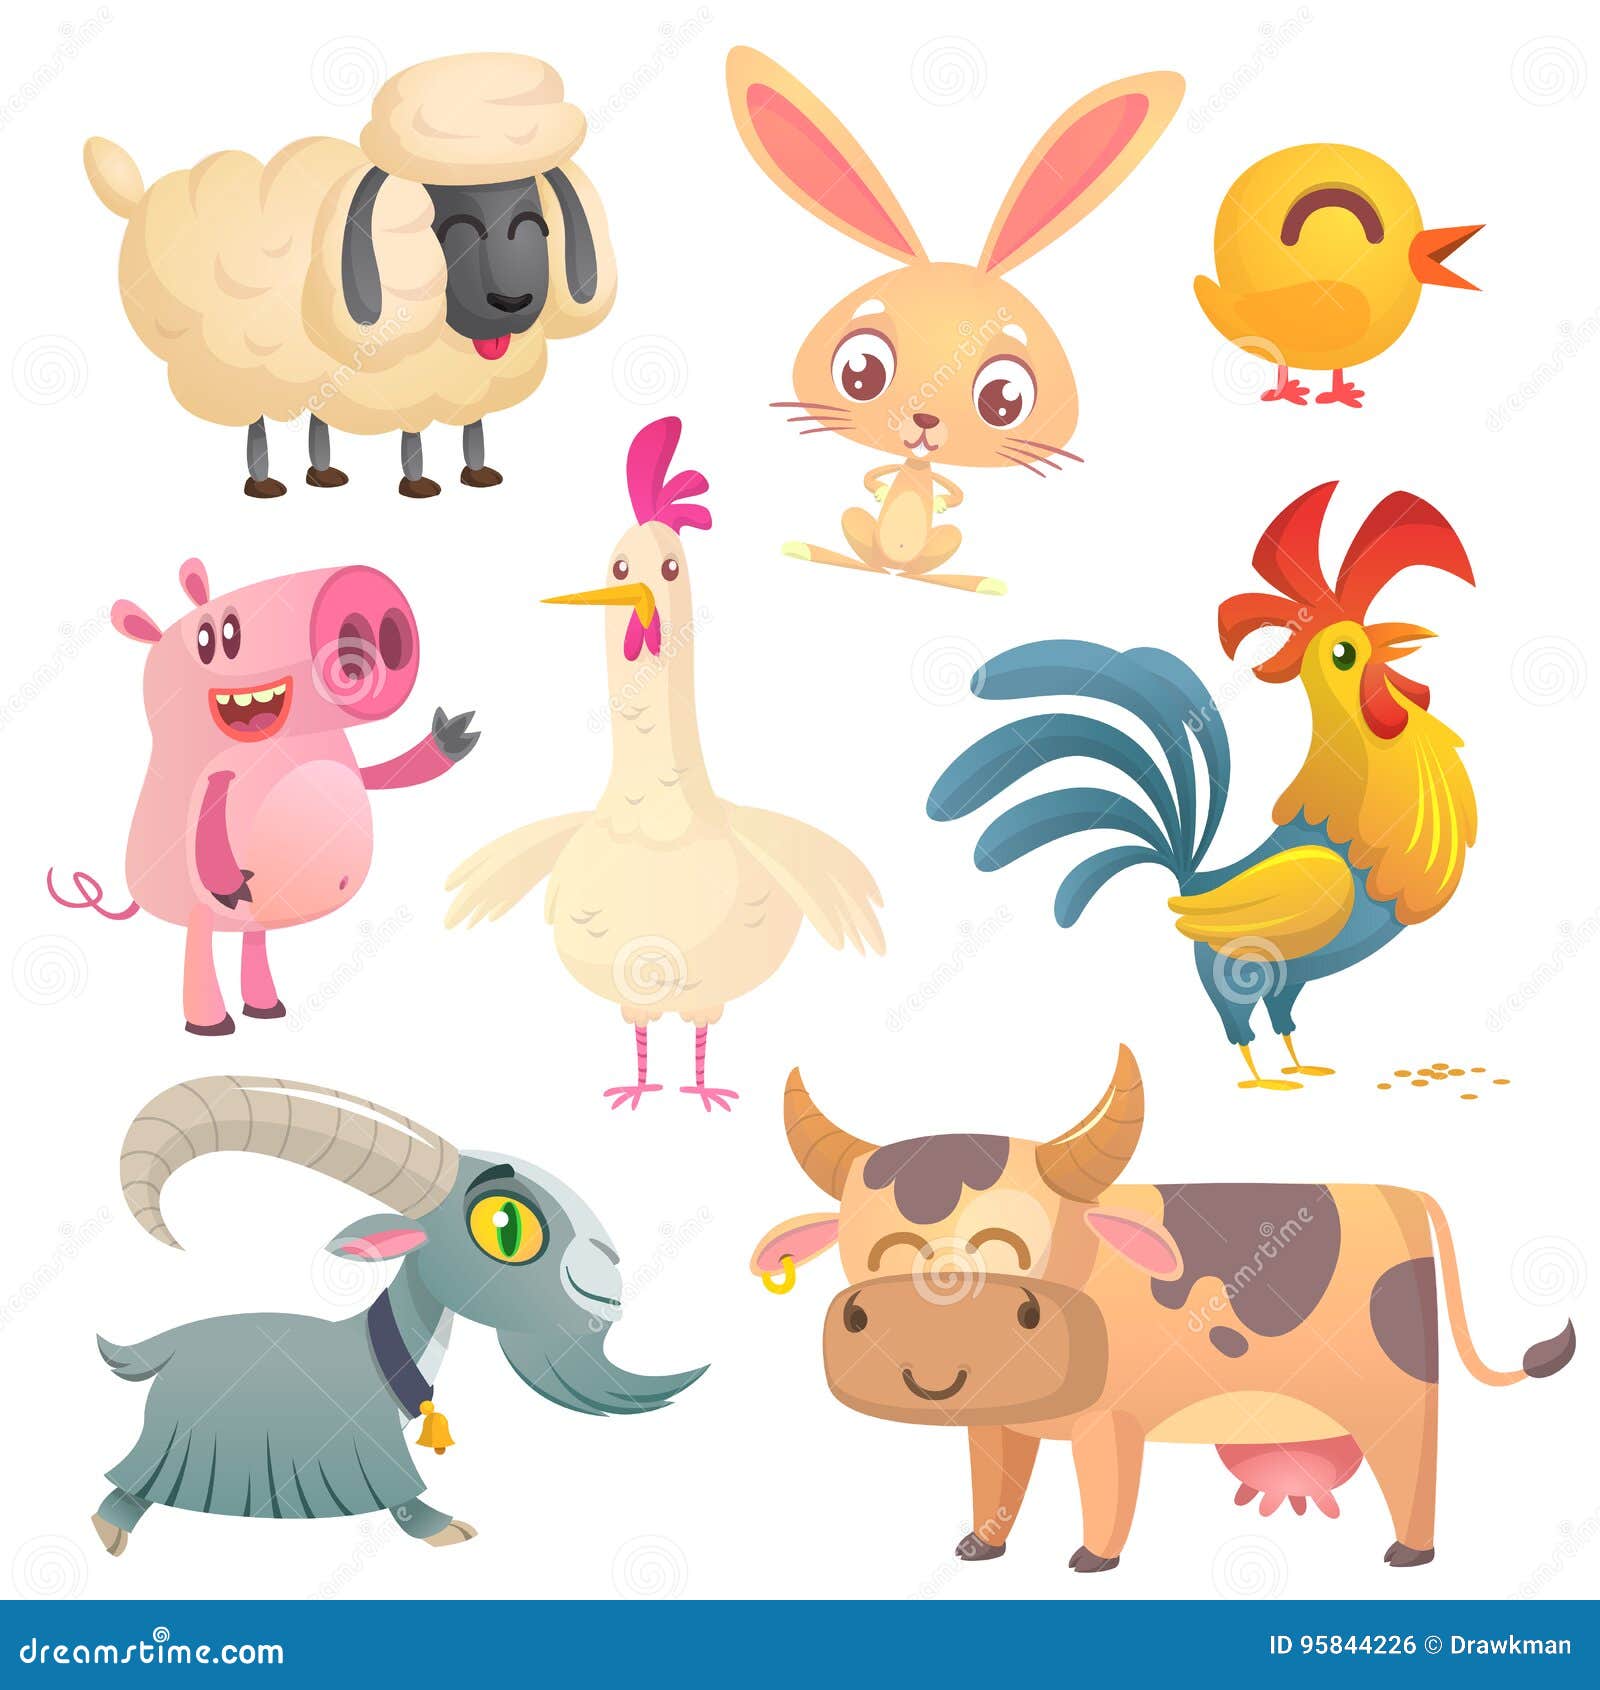 Cartoon Farm Animals. Vector Illustration of Sheep, Bunny Rabbit, Chicken,  Pig, Hen, Rooster, Goat and Cow Stock Vector - Illustration of farm,  design: 95844226